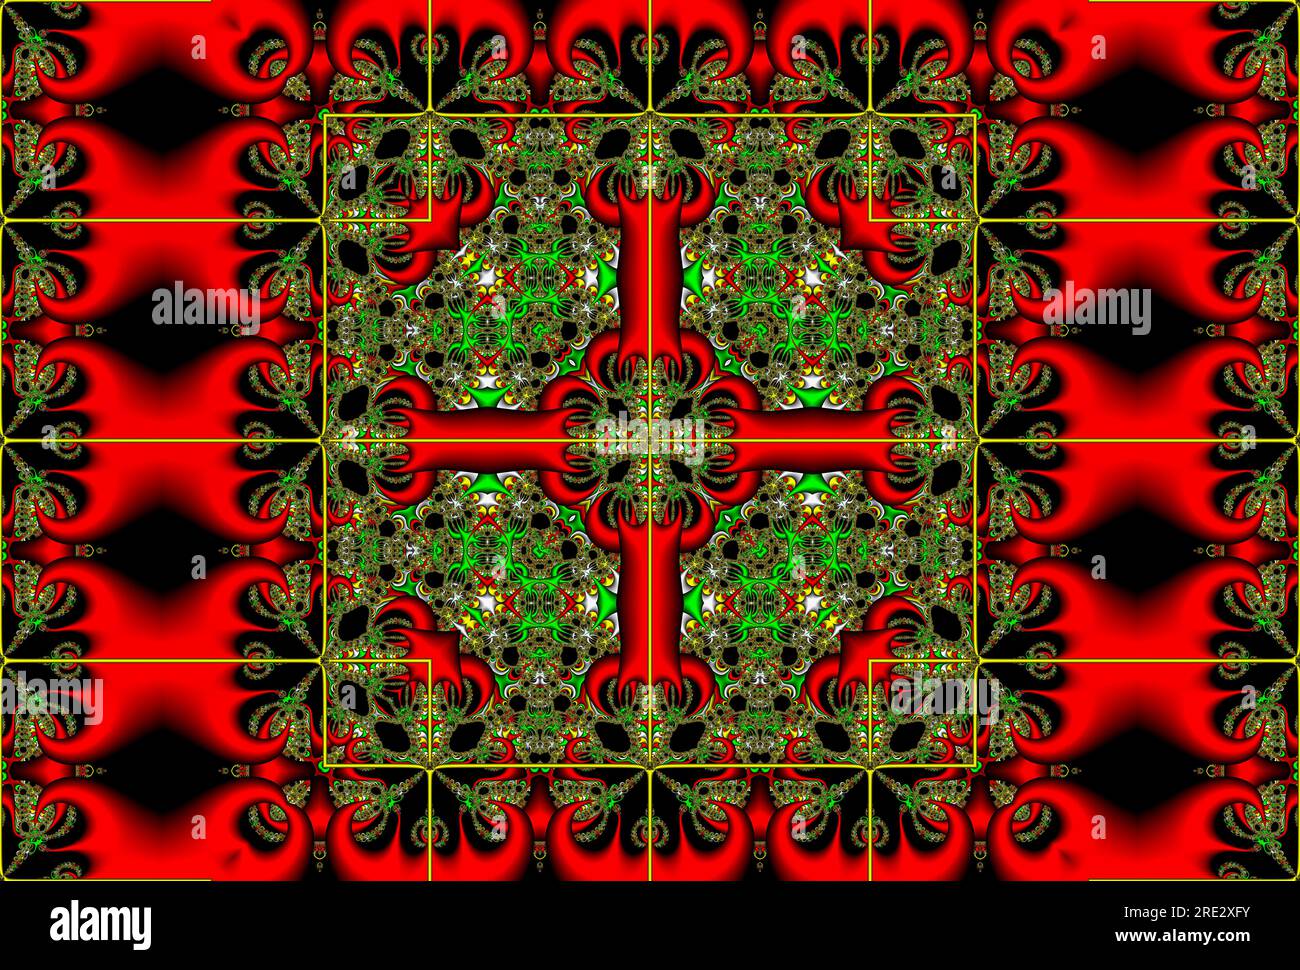 Illustration fractale colorée image art numérique, effet kaléidoscope symétrie art de motif géométrique coloré symétrique Banque D'Images